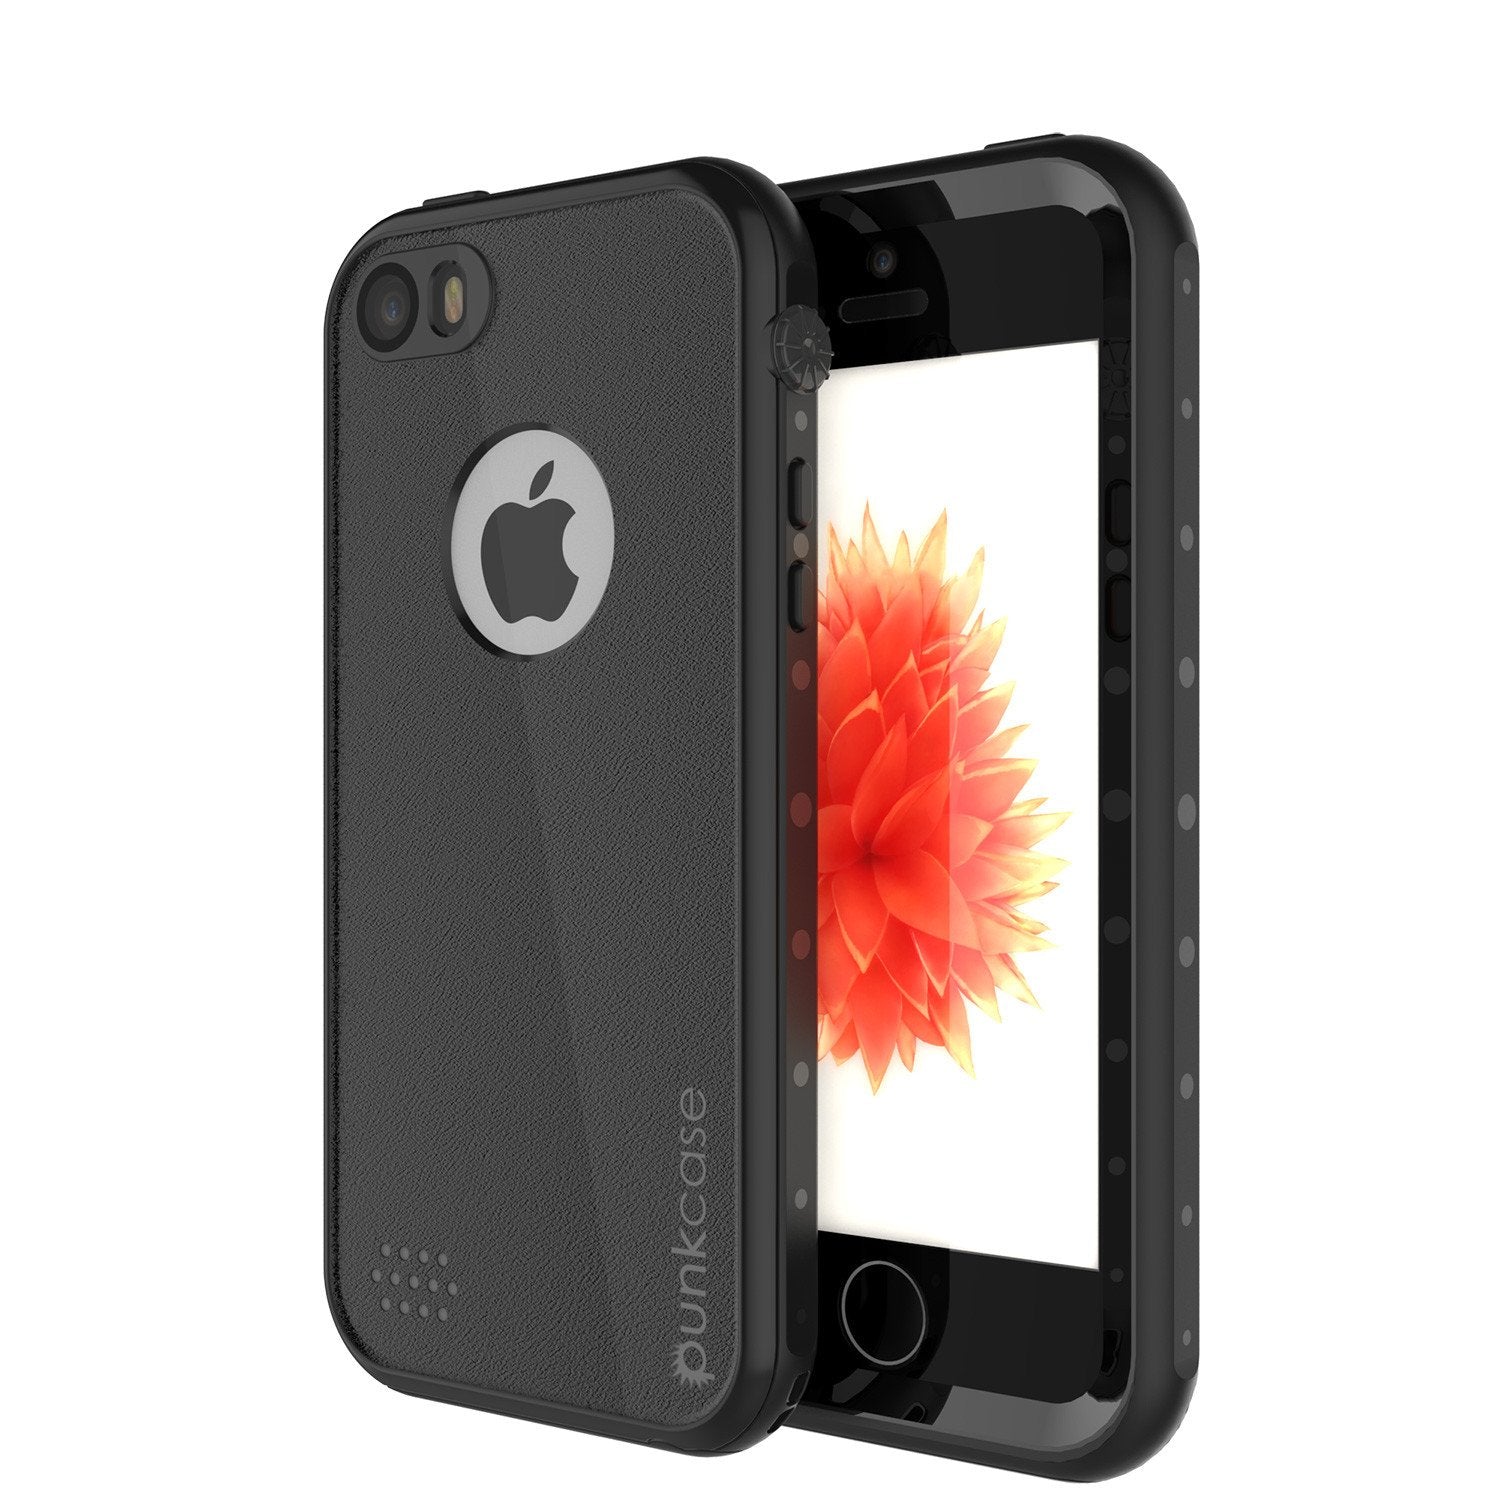 iPhone SE/5S/5 Waterproof Case, PunkCase StudStar Black, Shock/Dirt/Snow Proof | Lifetime Warranty - PunkCase NZ